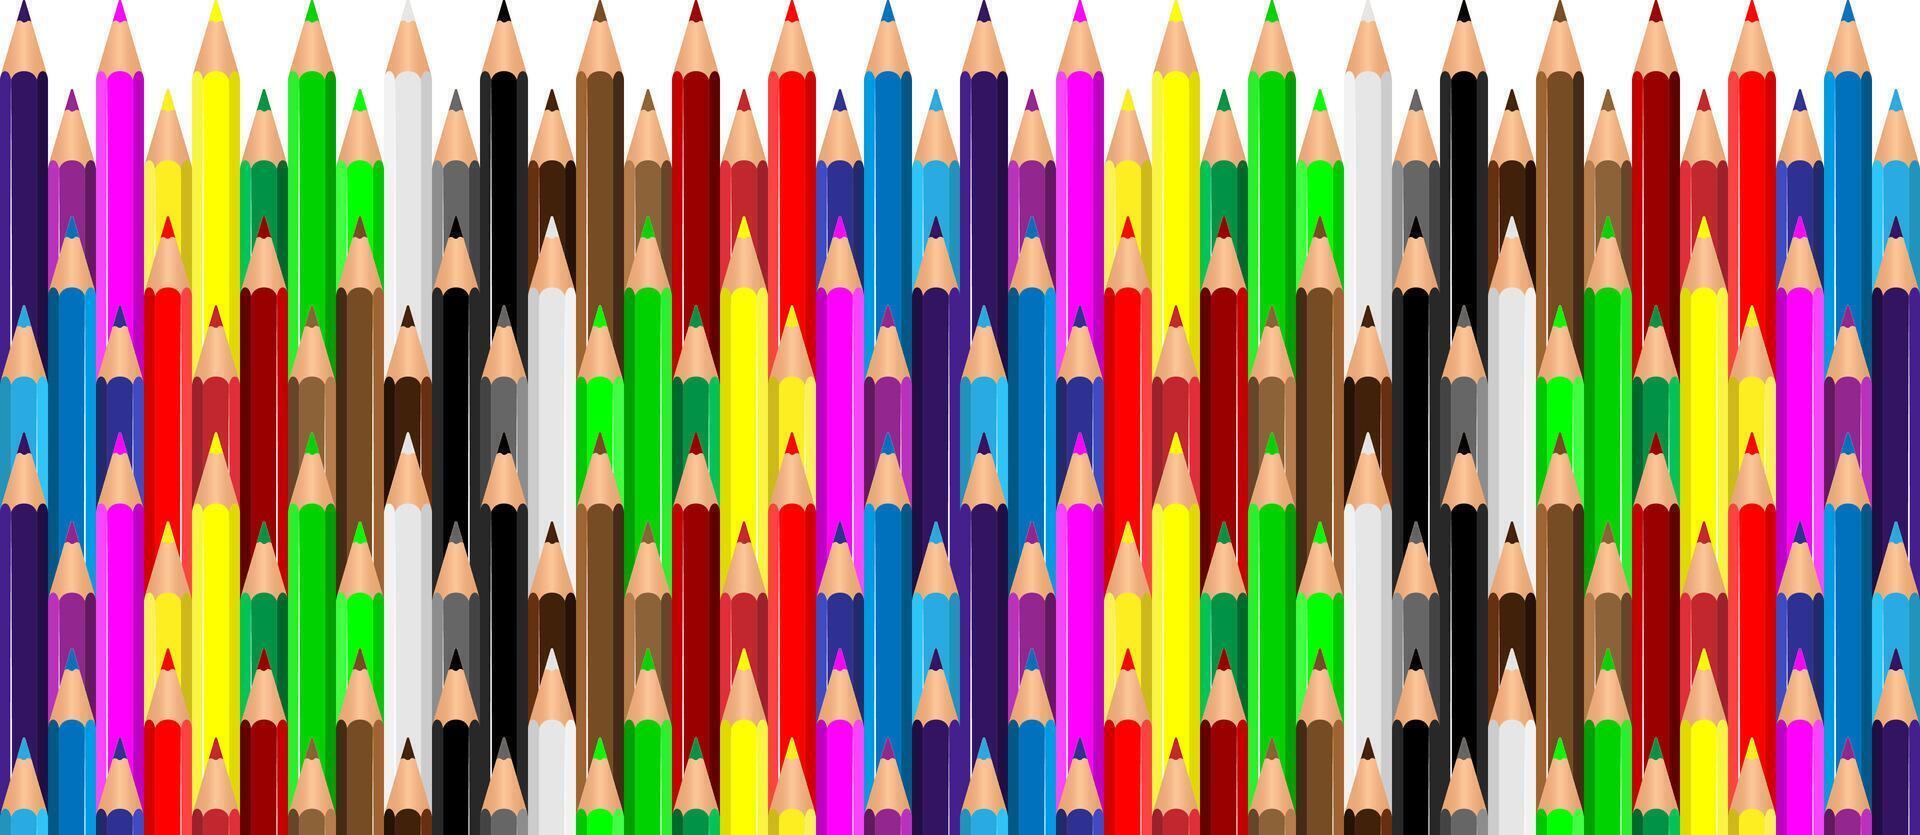 coloré des crayons crayons de couleur pose dans ligne. vague ligne fabriqué par crayon conseils. ensemble de crayons de couleur pour illustrations, art, en étudiant. prêt pour école des trucs retour à école illustration vecteur